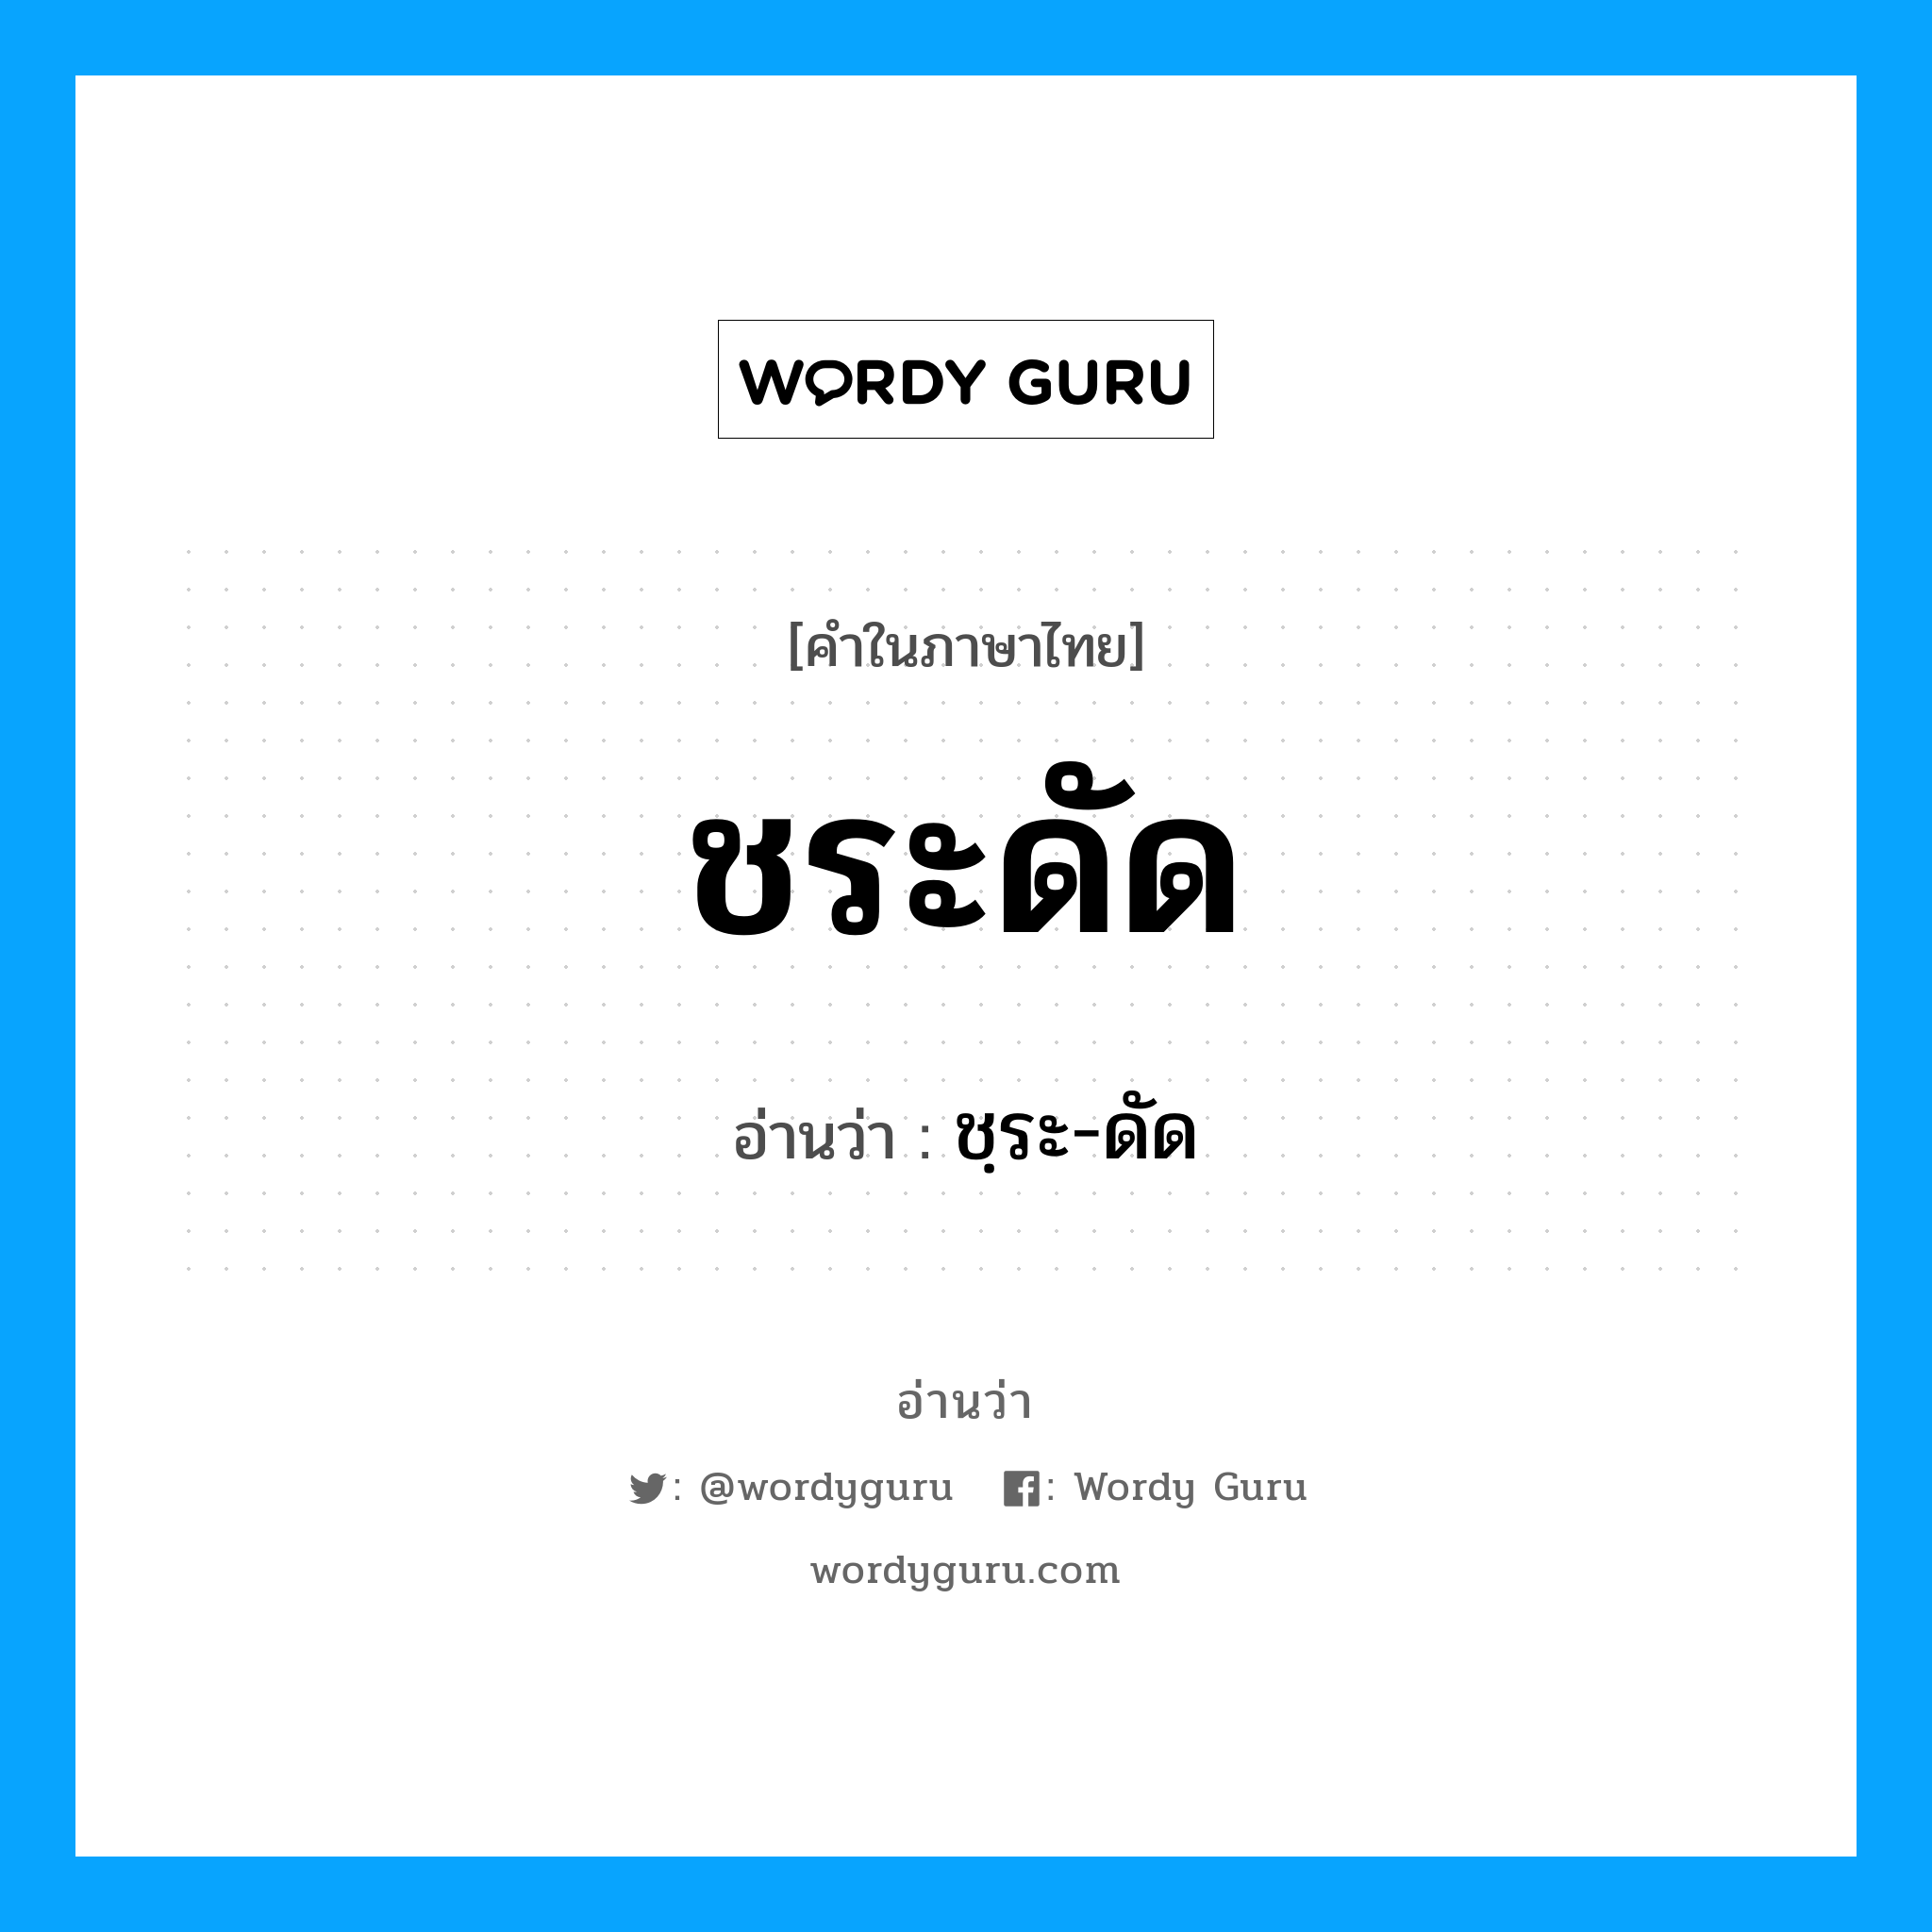 ชฺระ-ดัด เป็นคำอ่านของคำไหน?, คำในภาษาไทย ชฺระ-ดัด อ่านว่า ชระดัด